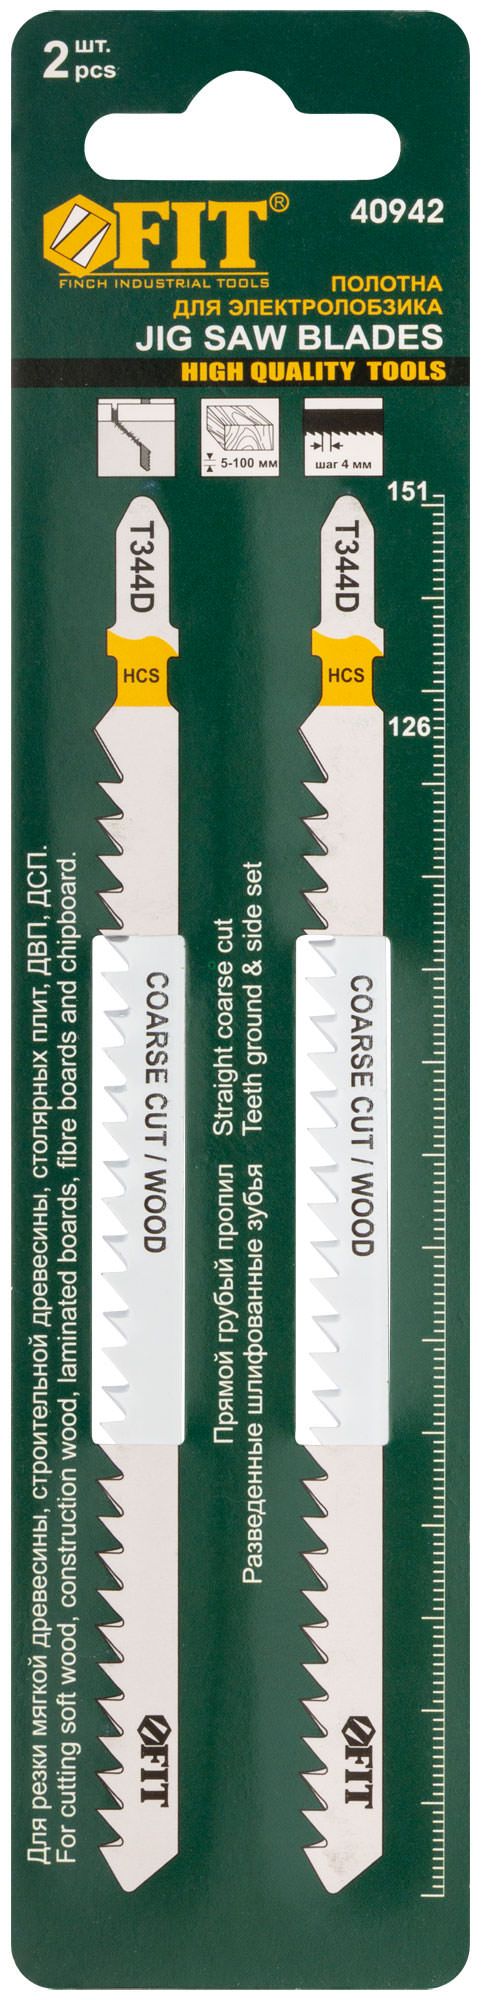 Полотна по дереву, HCS, разведенные, шлифованные зубья 151/126/4 мм (T344D), 2 шт.